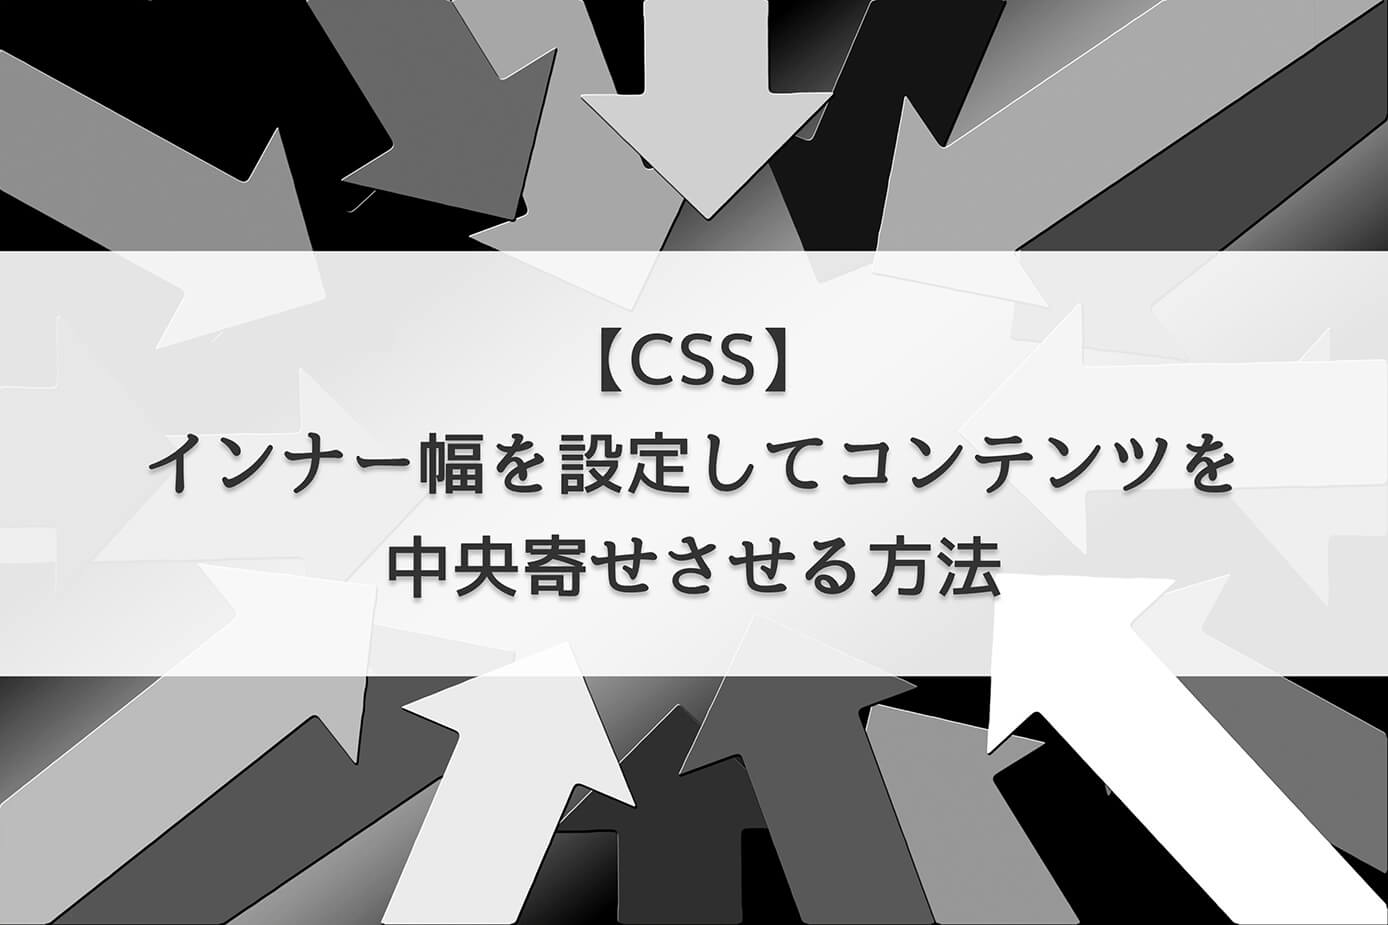 【CSS】インナー幅を設定してコンテンツを中央寄せさせる方法